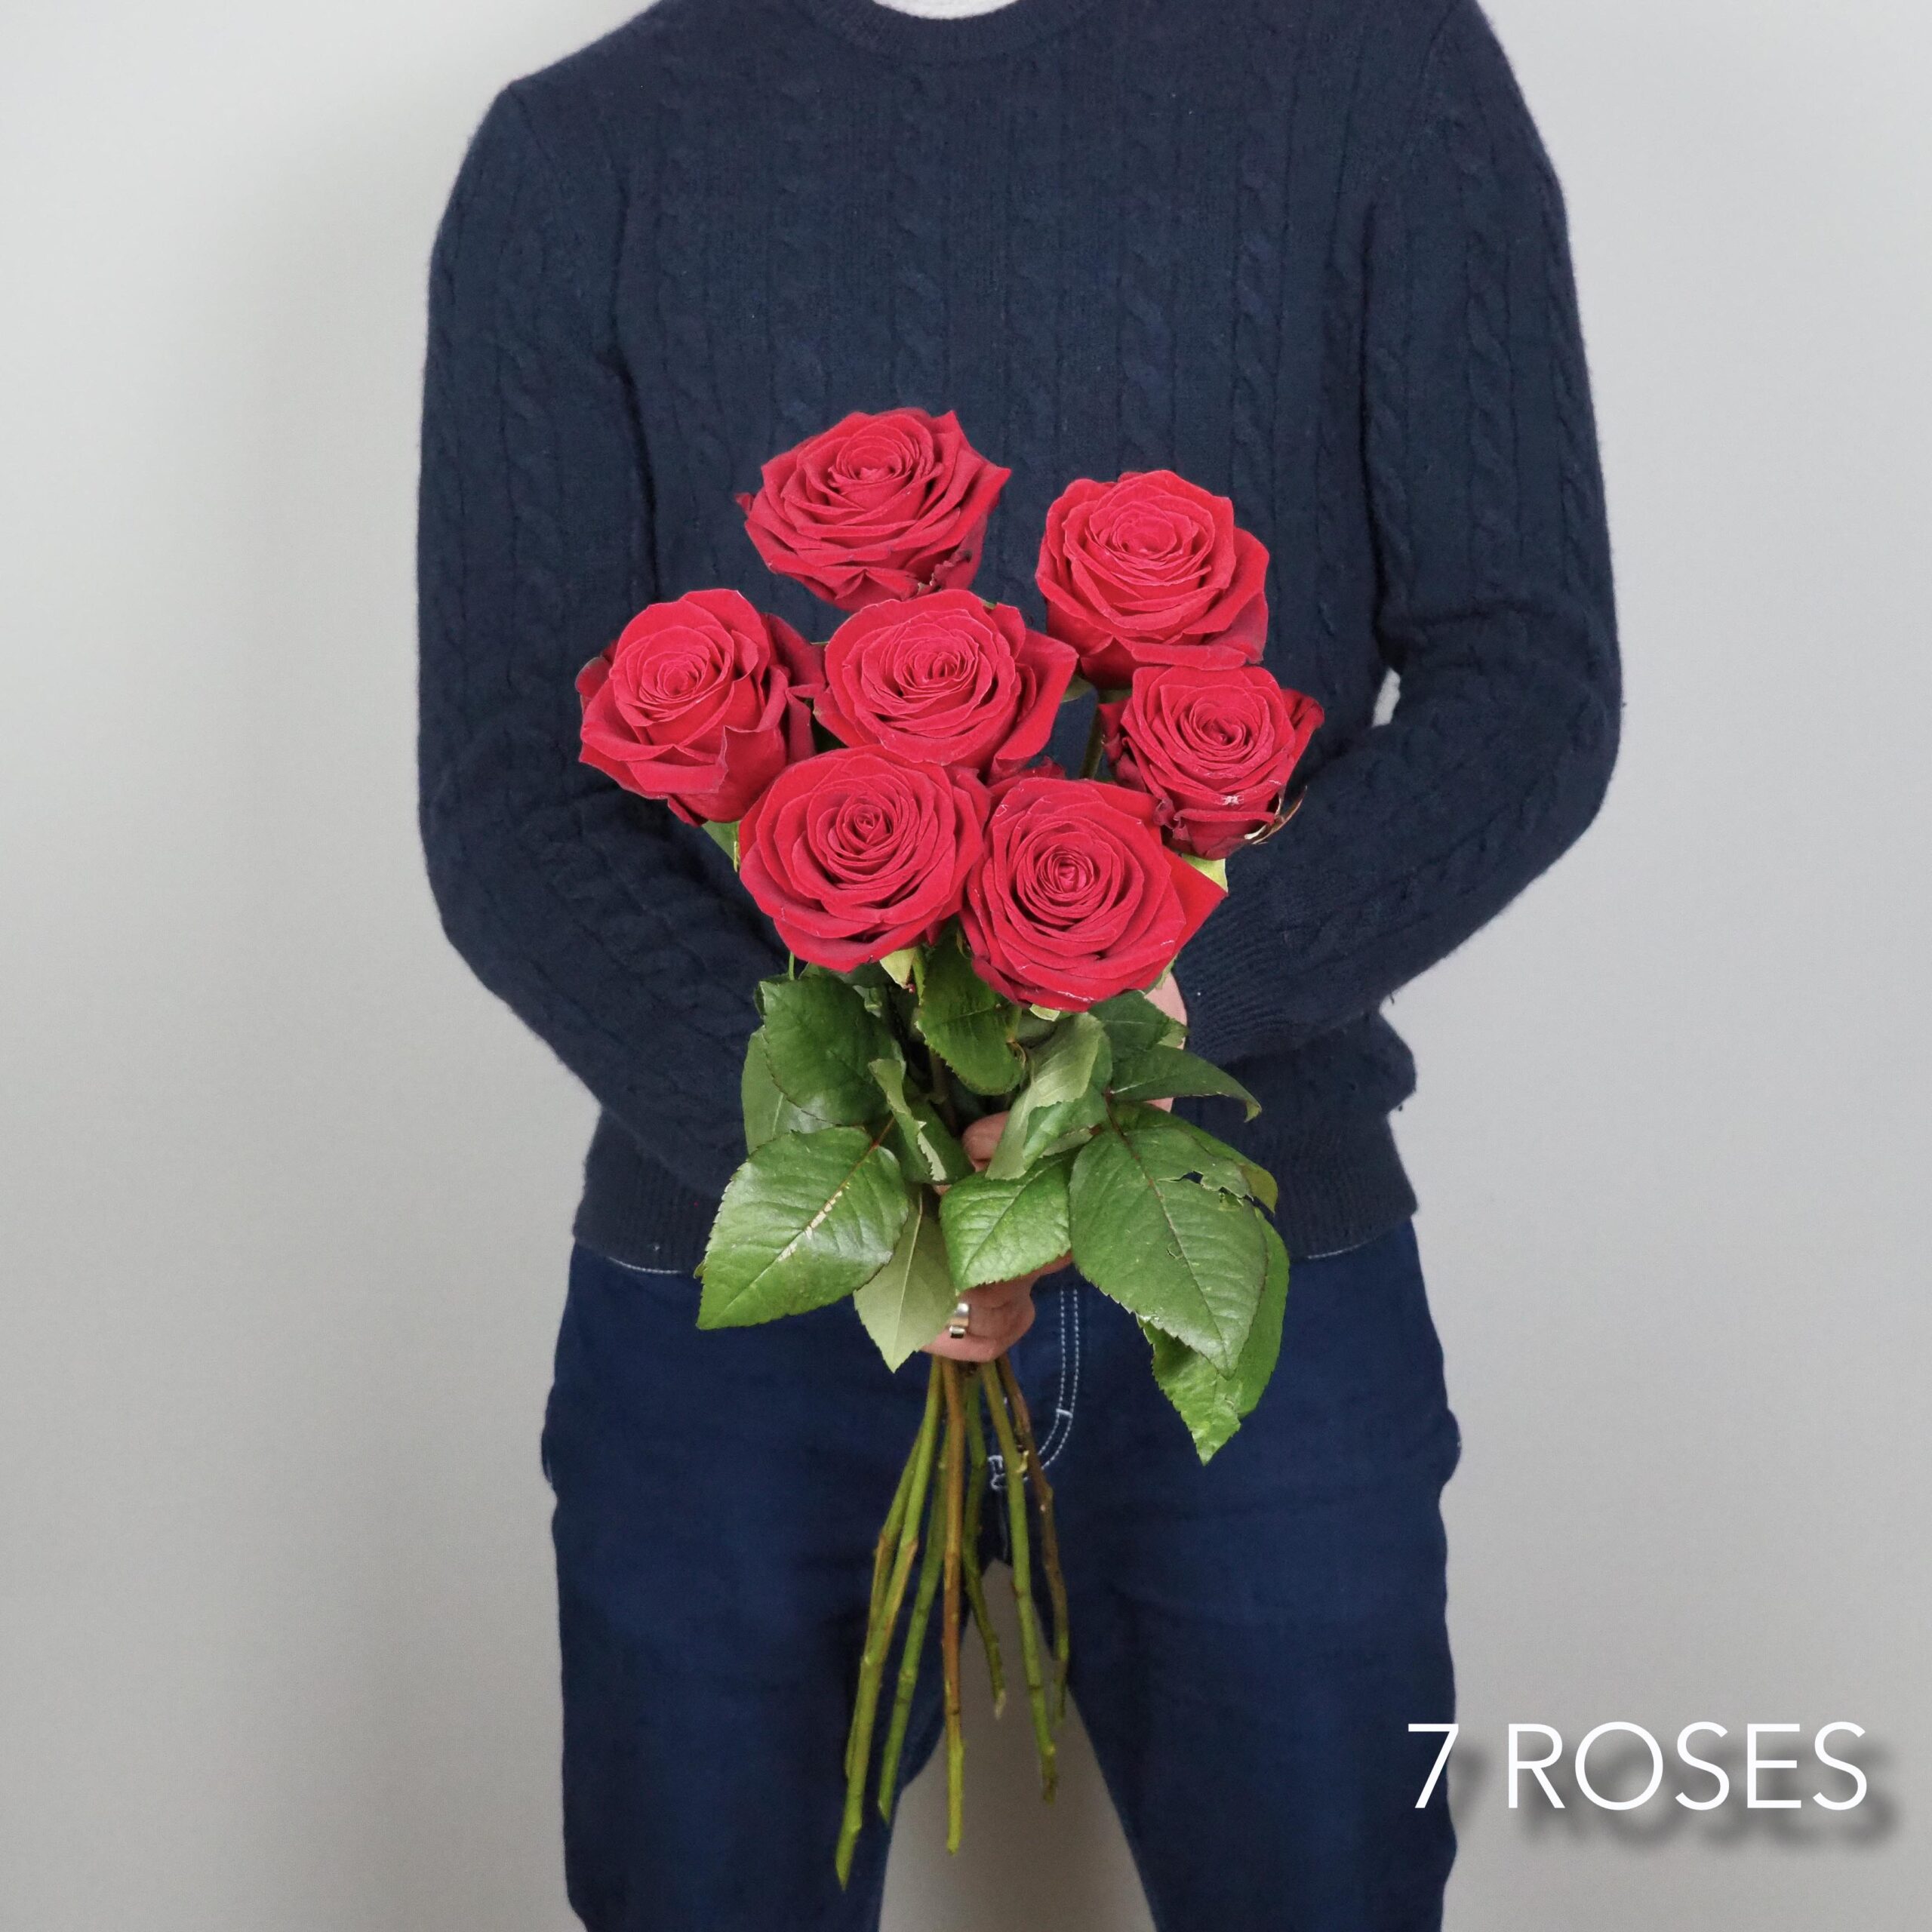 Bouquet de roses rouges St Valentin 7 roses